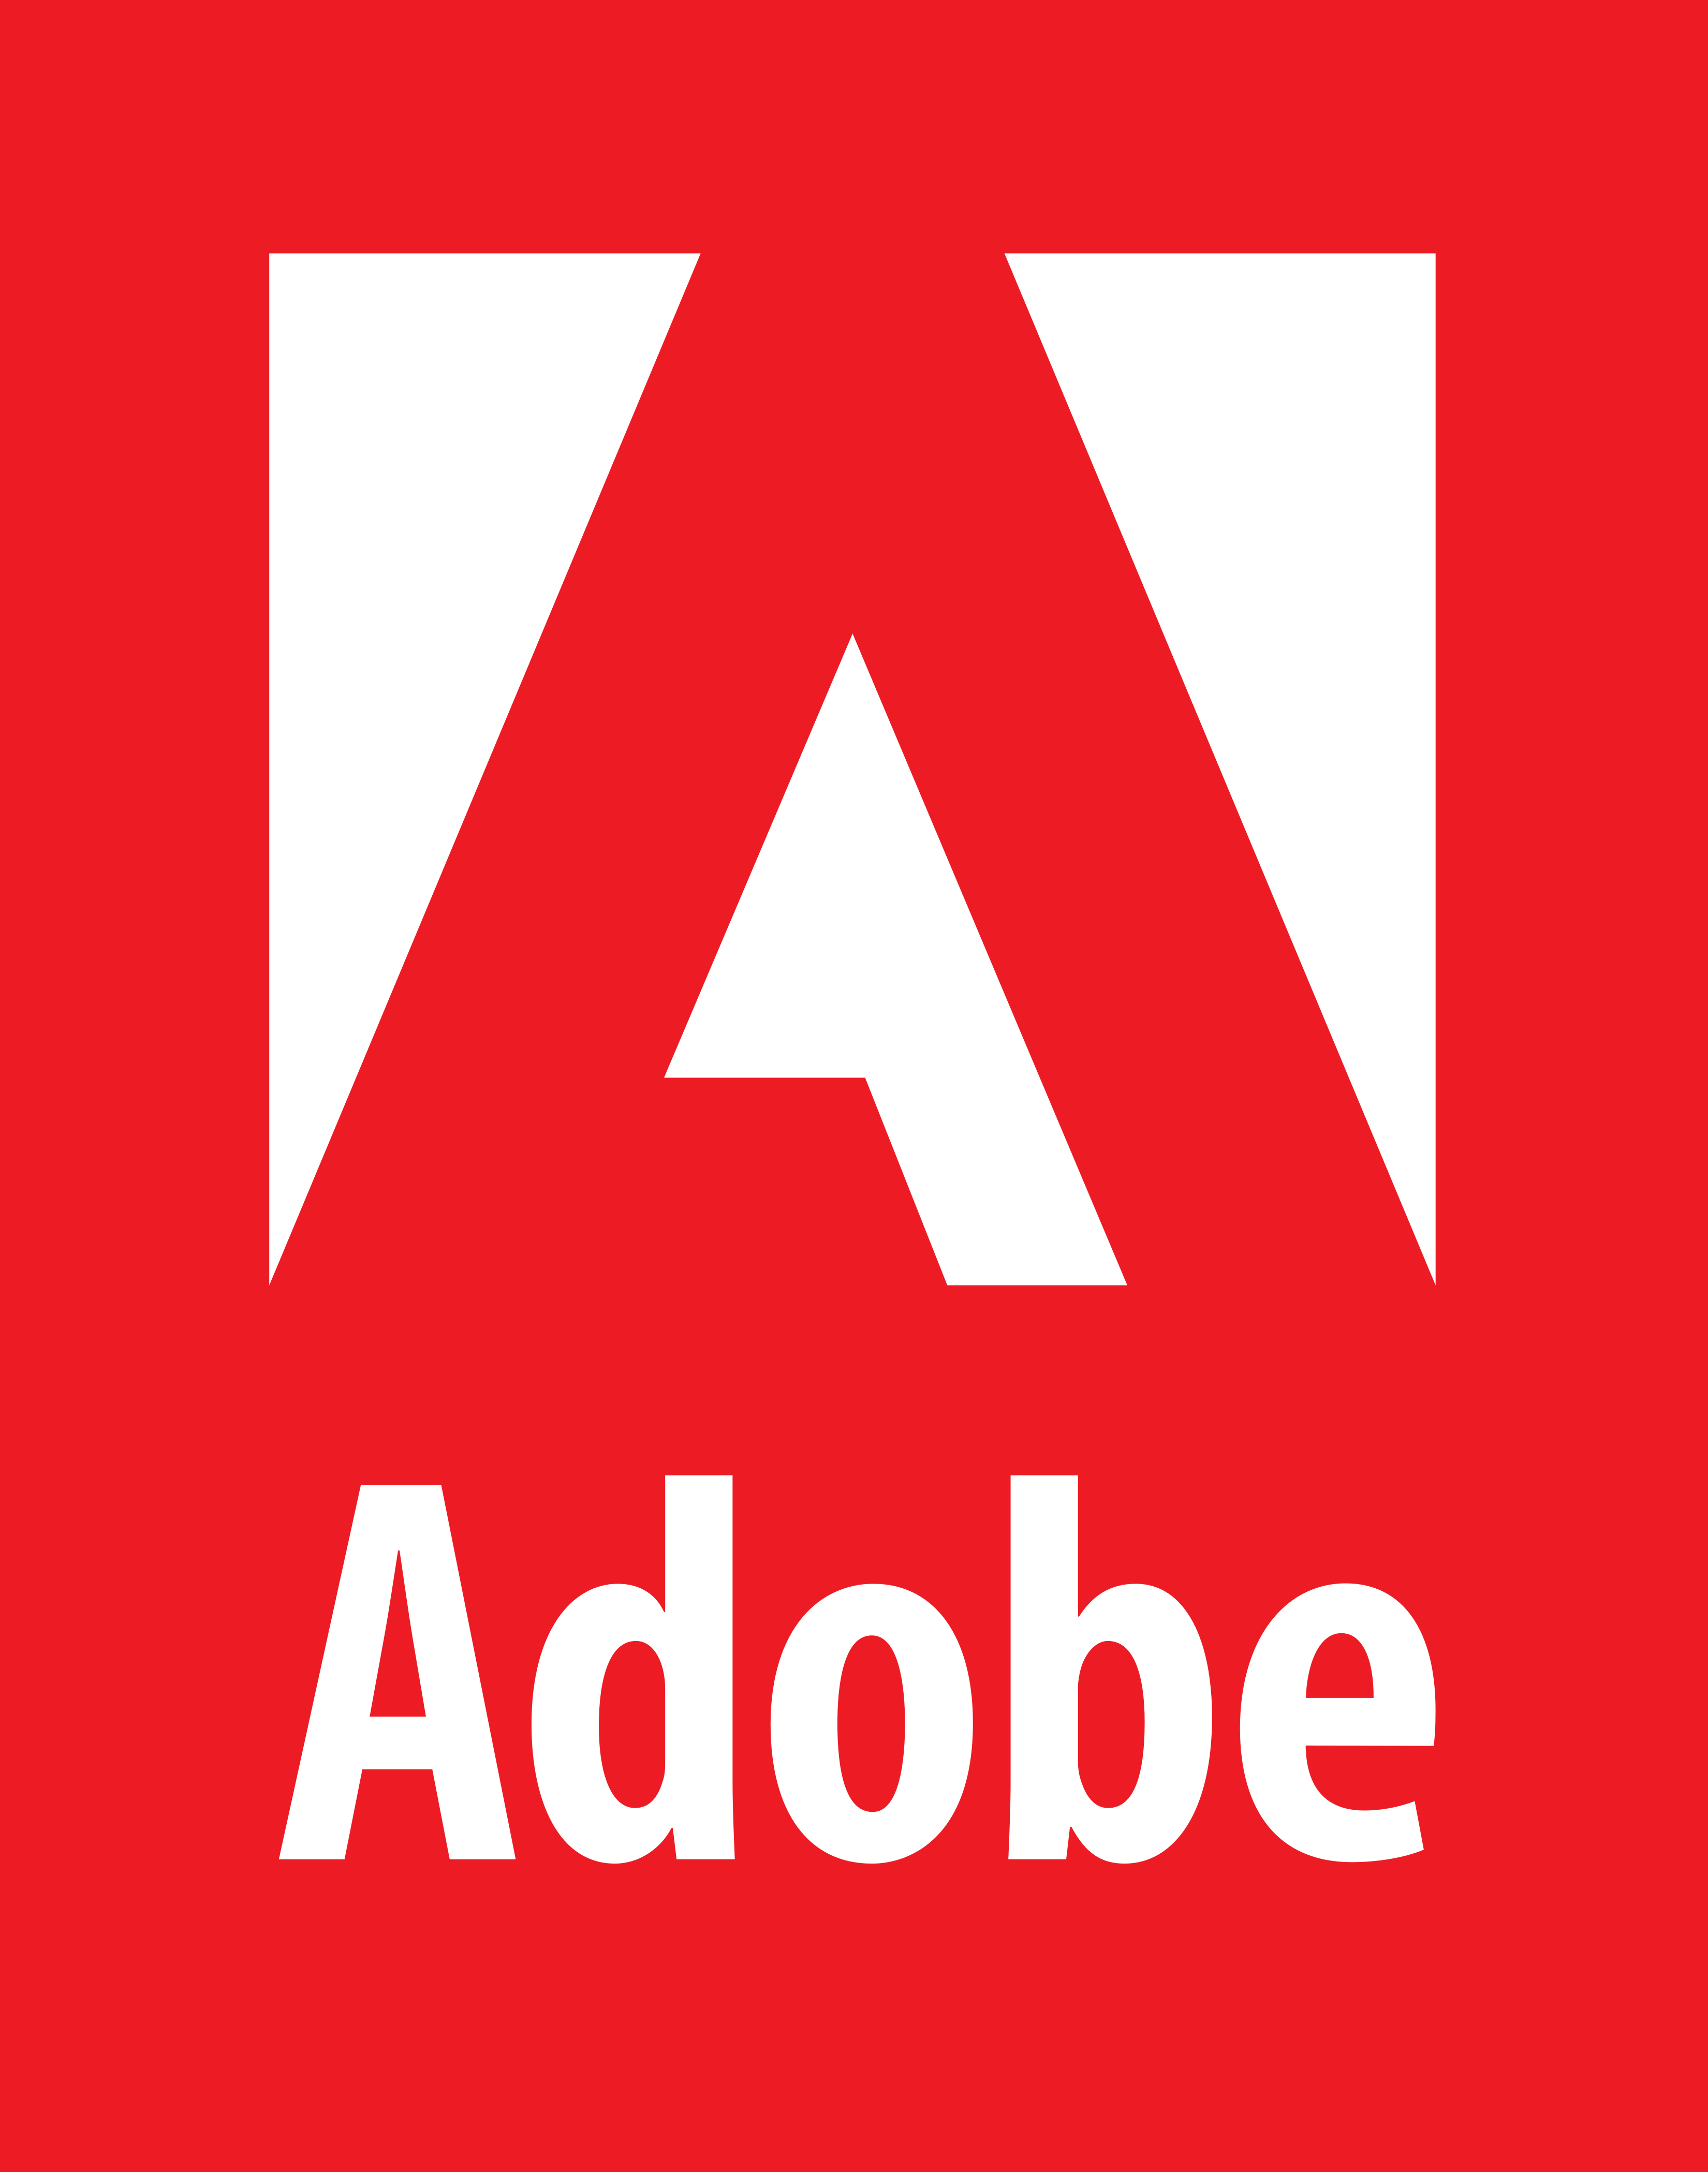 Aodbe Logo - Logo Adobe. Design (misc.). Logos, Adobe e Brochure layout